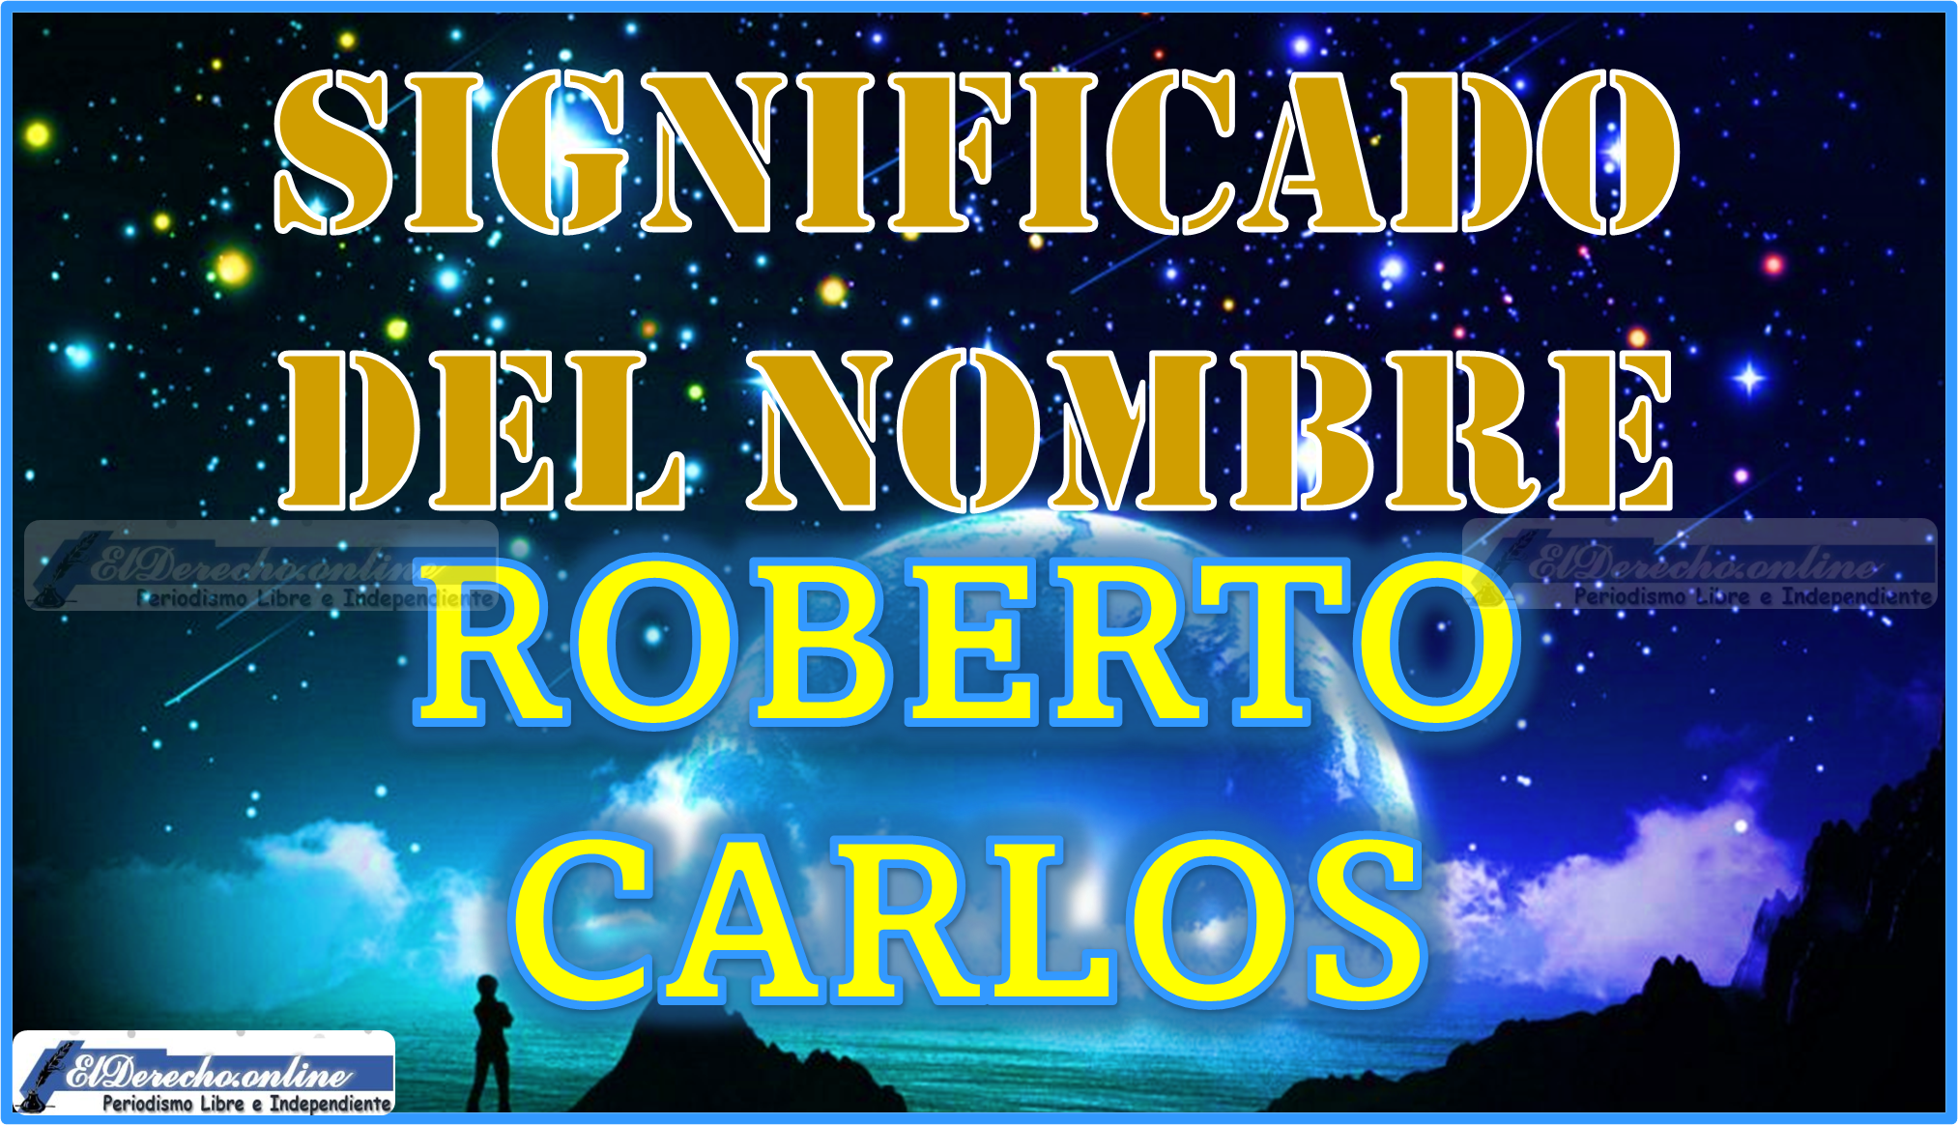 Significado del nombre Roberto Carlos, su origen y más